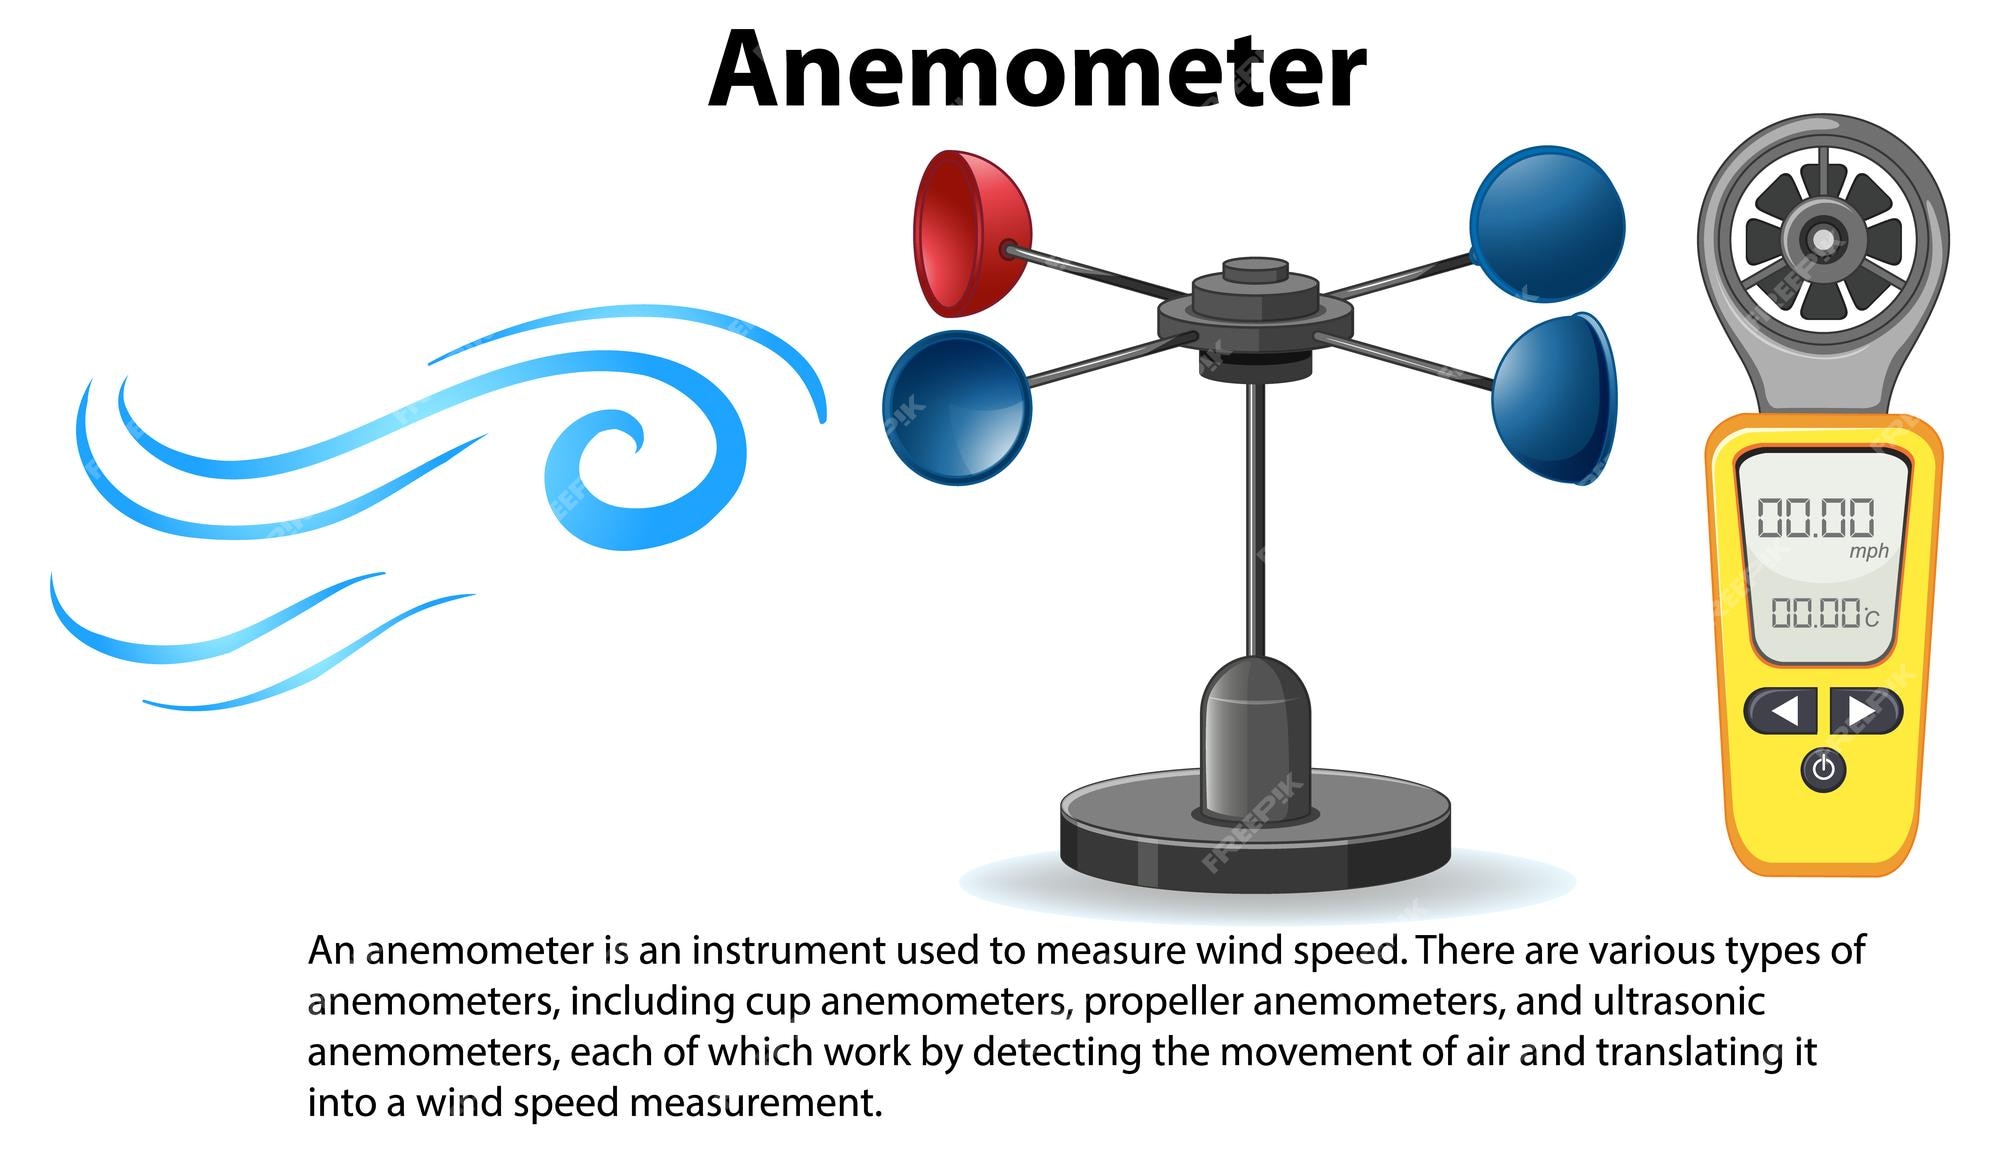 Como funciona un anemometro